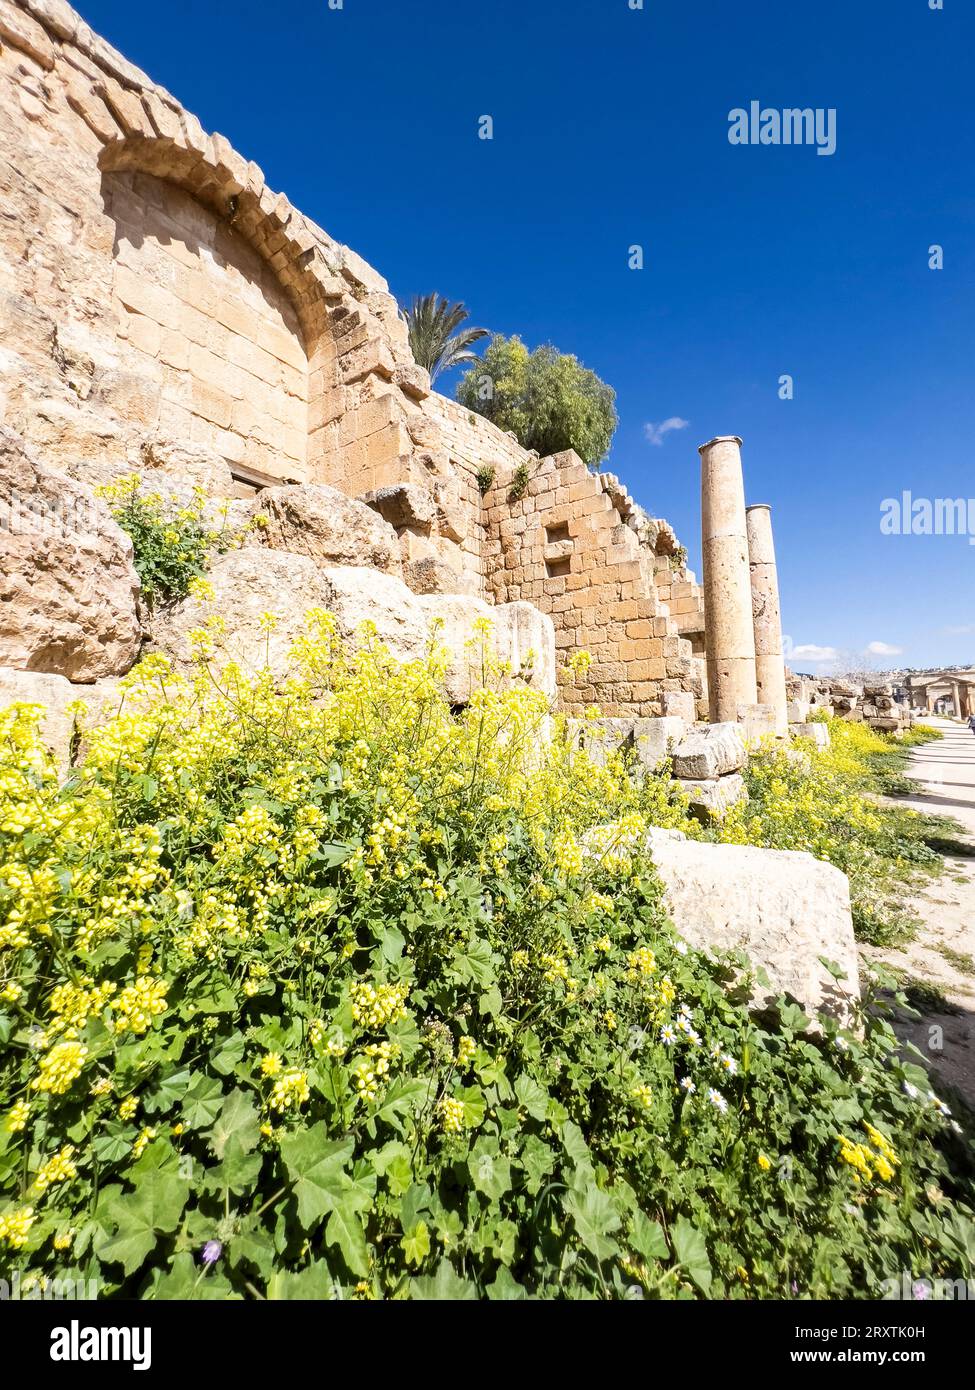 Fleurs devant des colonnes dans l'ancienne ville de Jerash, qui aurait été fondée en 331 av. J.-C. par Alexandre le Grand, Jerash, Jordanie, Moyen-Orient Banque D'Images